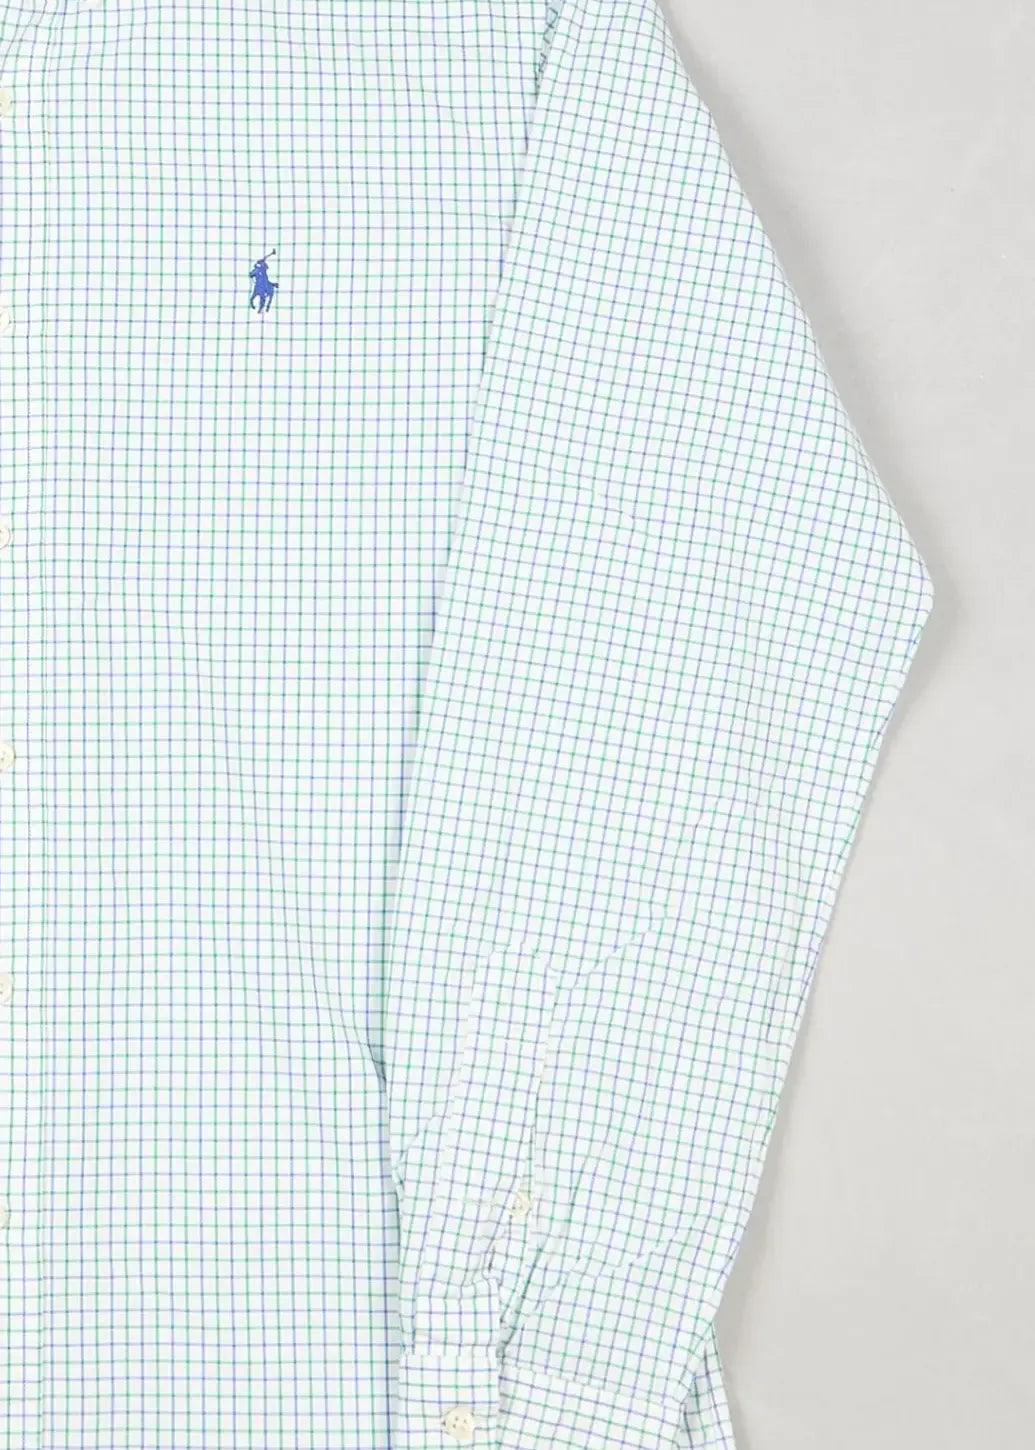 Ralph Lauren - Shirt (M) Right